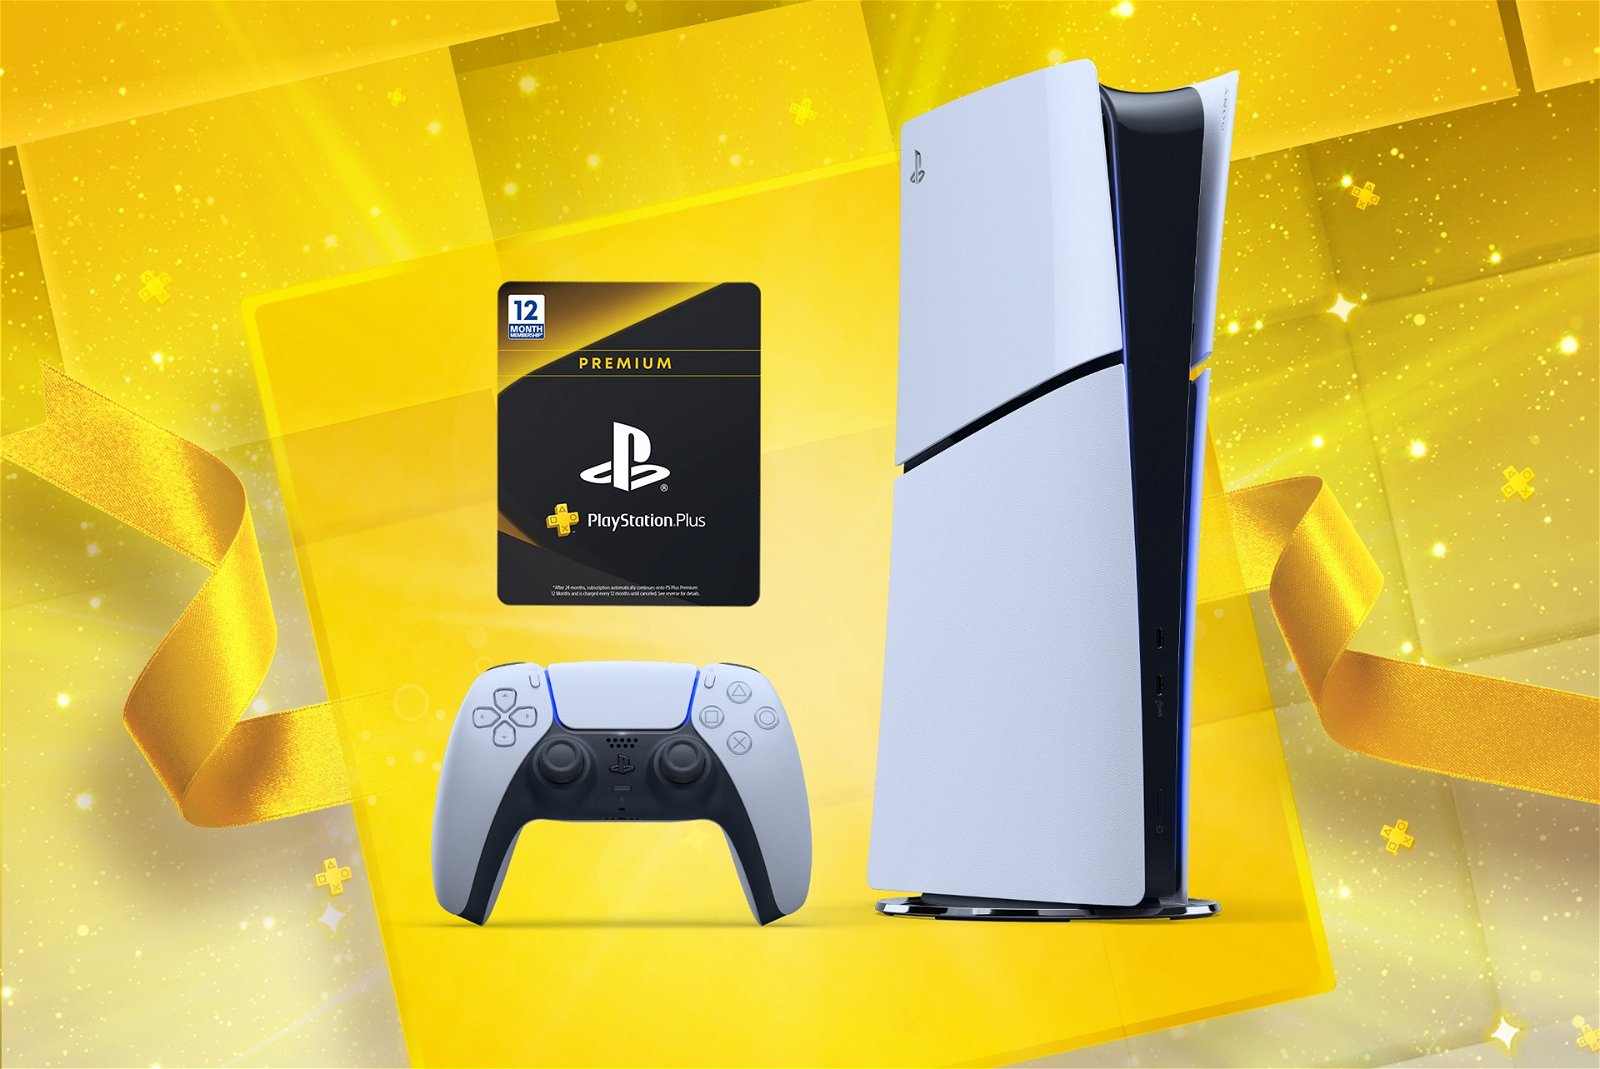 Giocare in streaming su PS5 i videogiochi PS5. Dal 23 ottobre lo potranno  fare gli abbonati a PlayStation Plus Premium